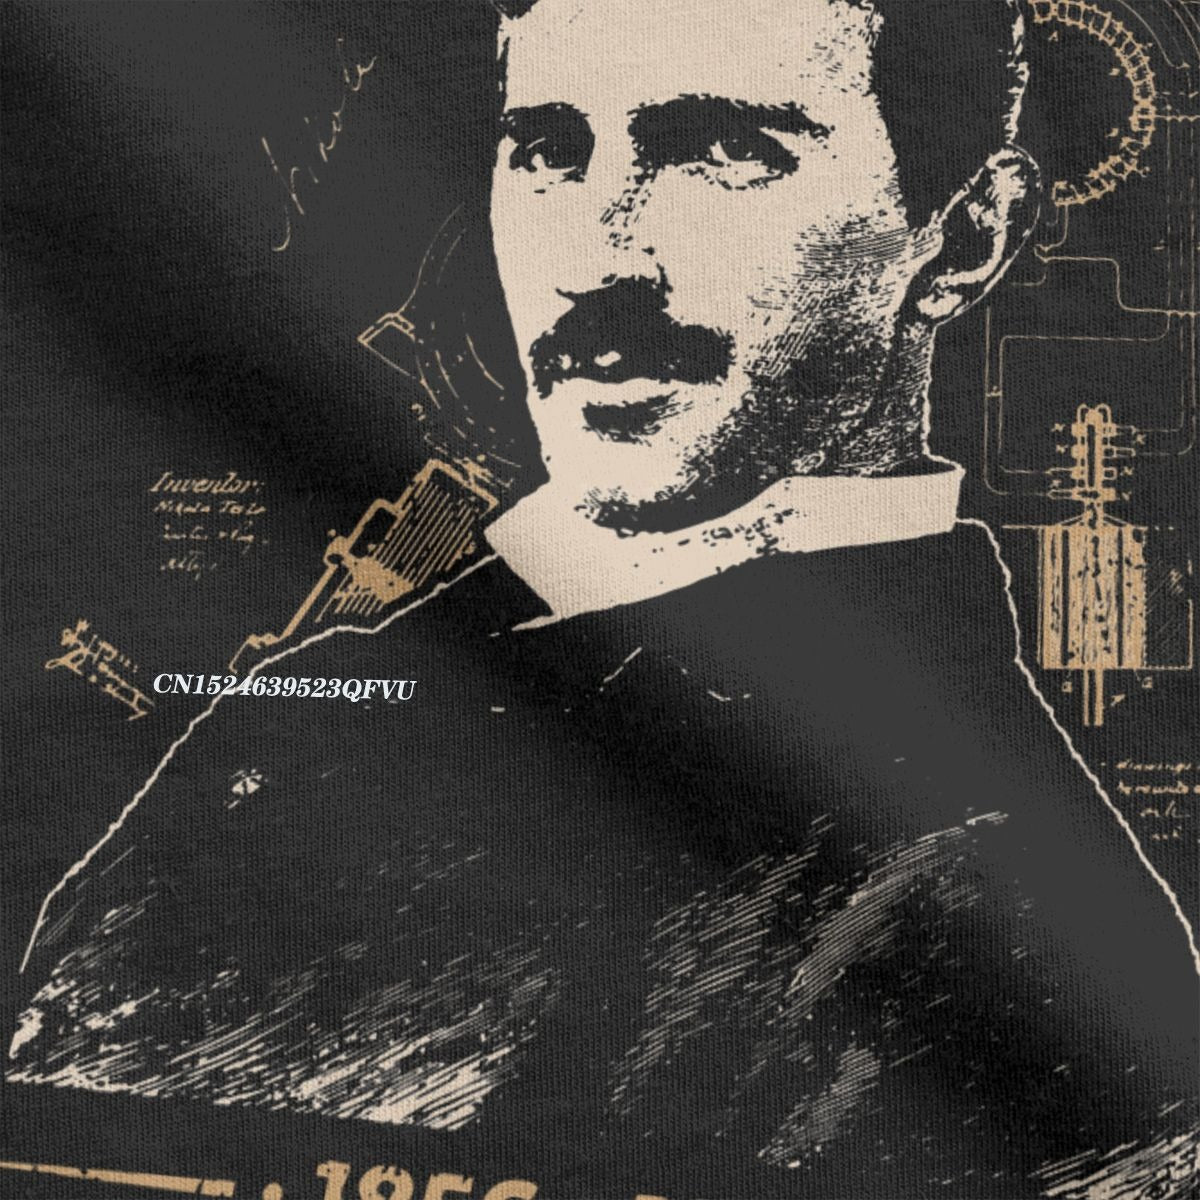 Nikola Tesla Shirt Men